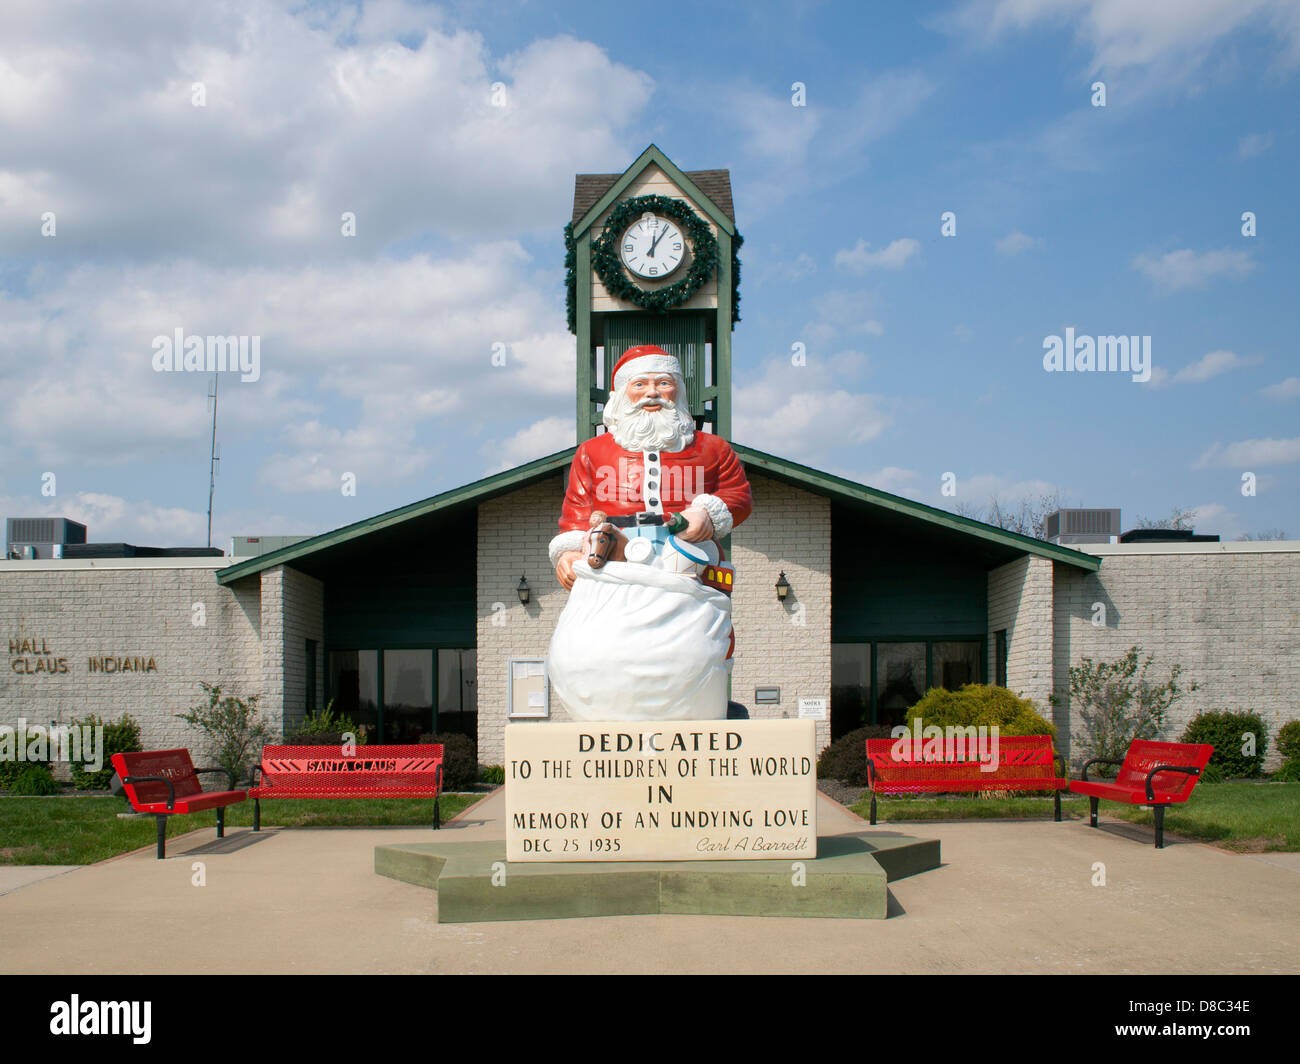 Gigantische Santa-Statue am Rathaus in Santa Claus Indiana Stockfoto